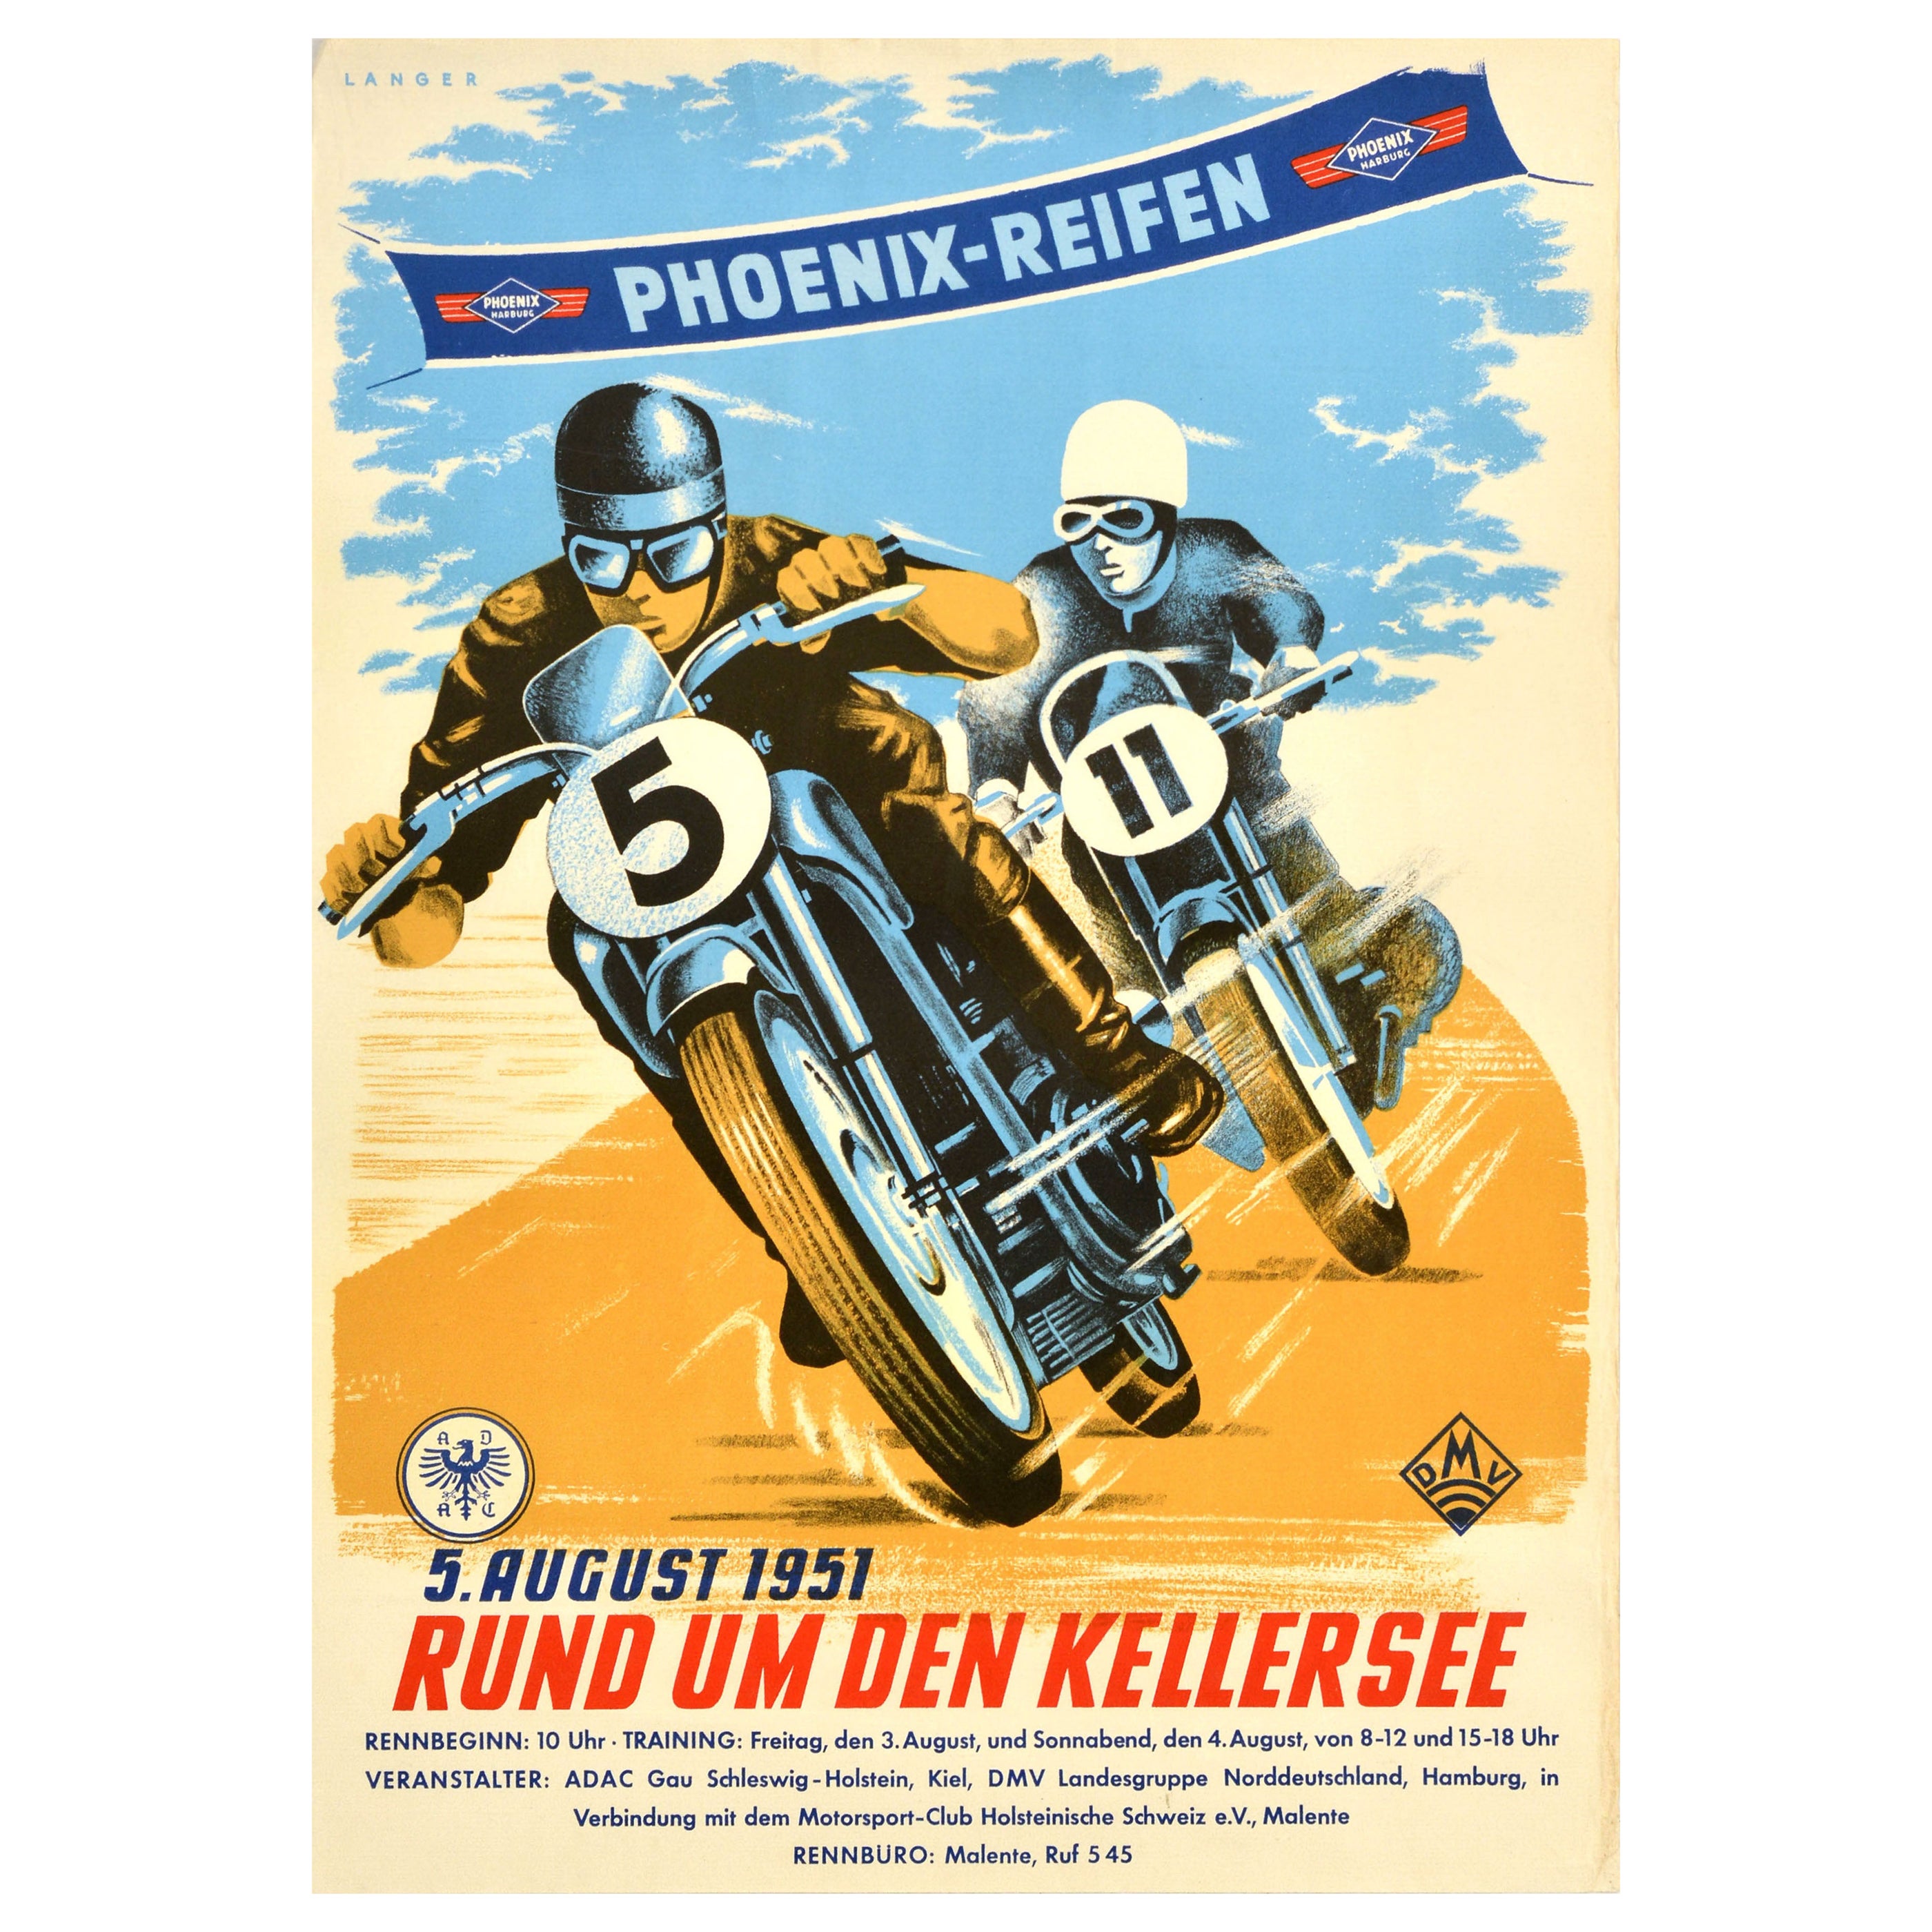 Original Vintage Motorsport Poster Motorcycle Race Phoenix Reifen 1951 Kellersee